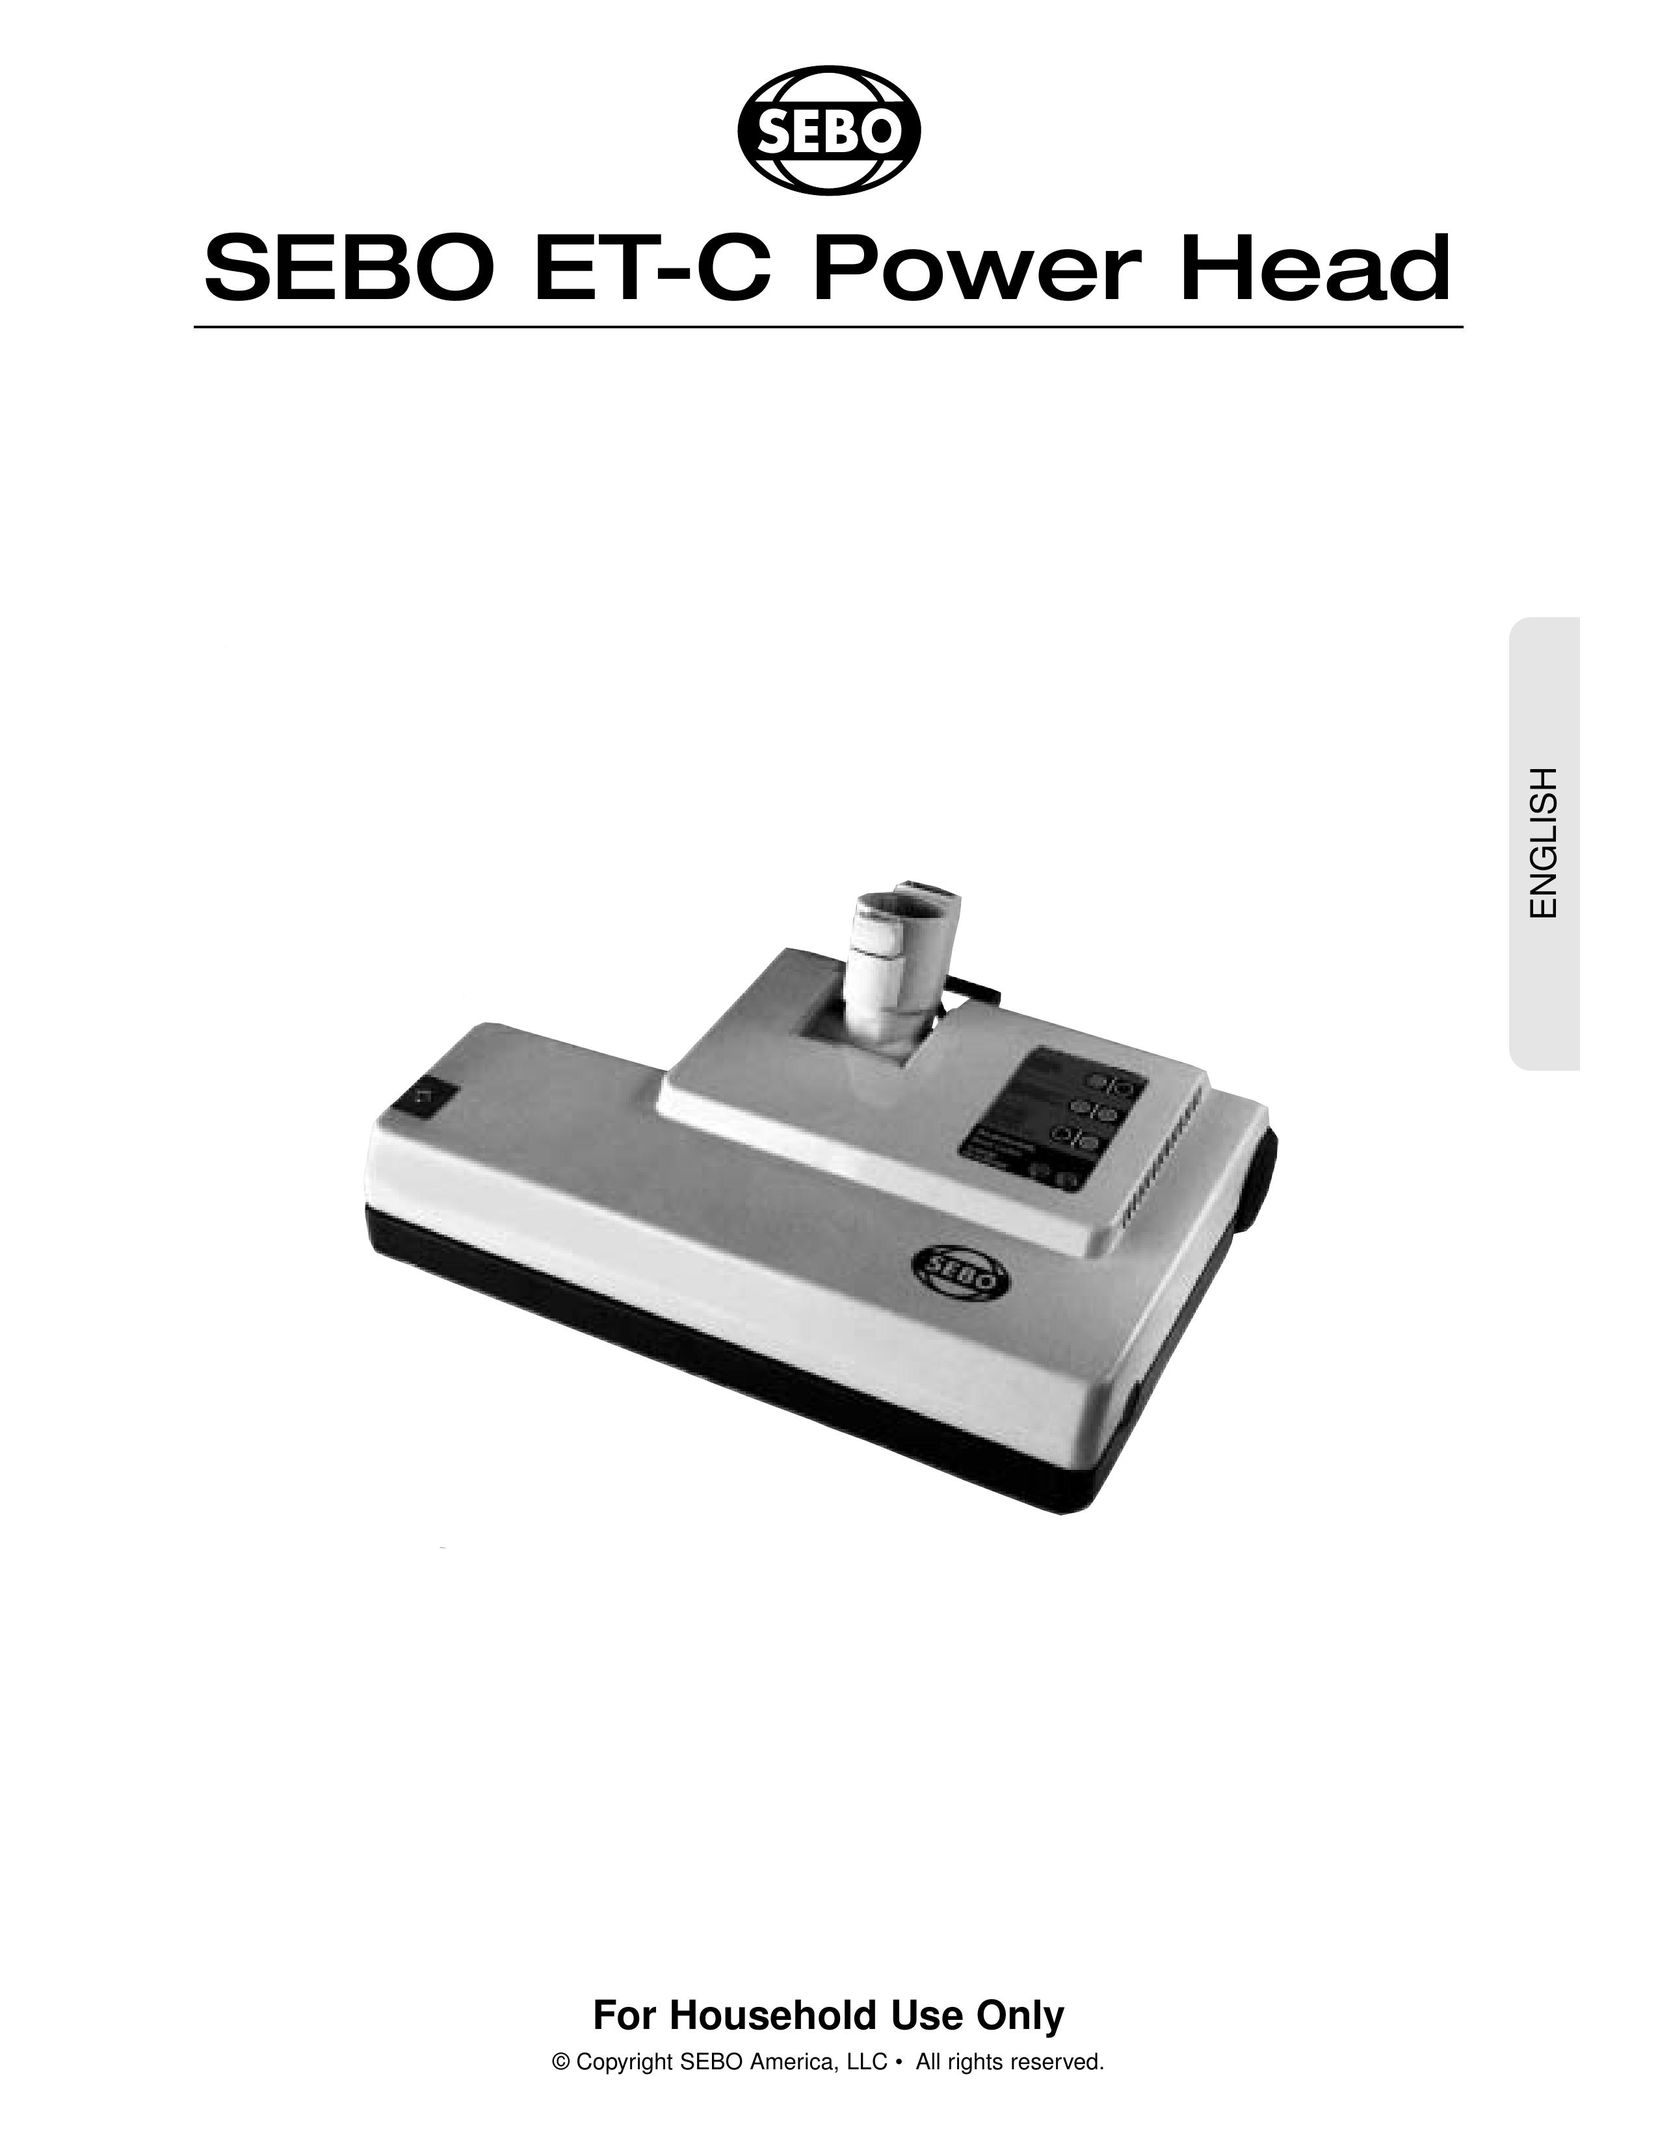 Sebo Power Head Carpet Cleaner User Manual